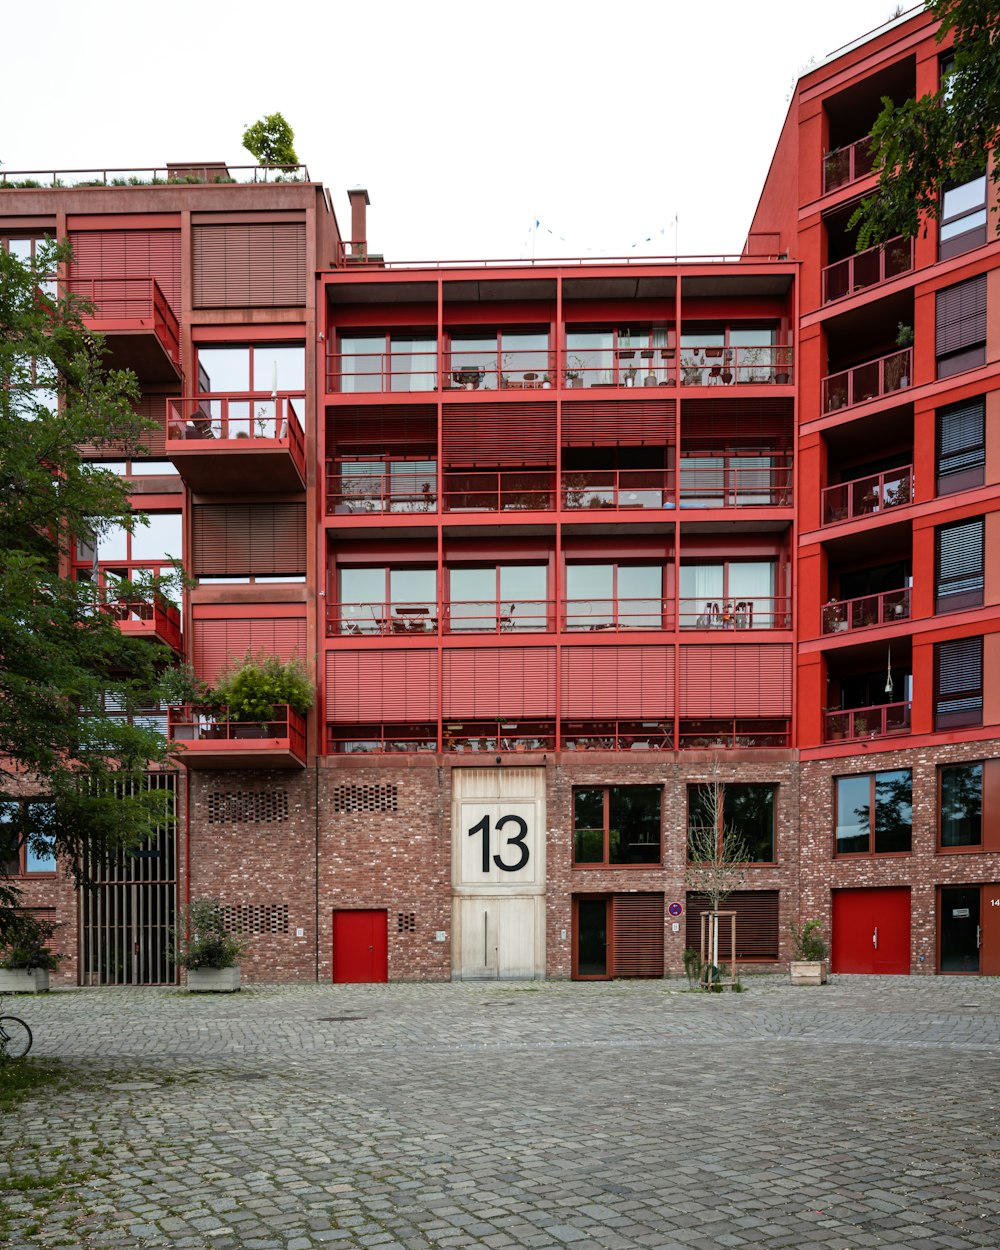 Un edificio rojo con un número 13